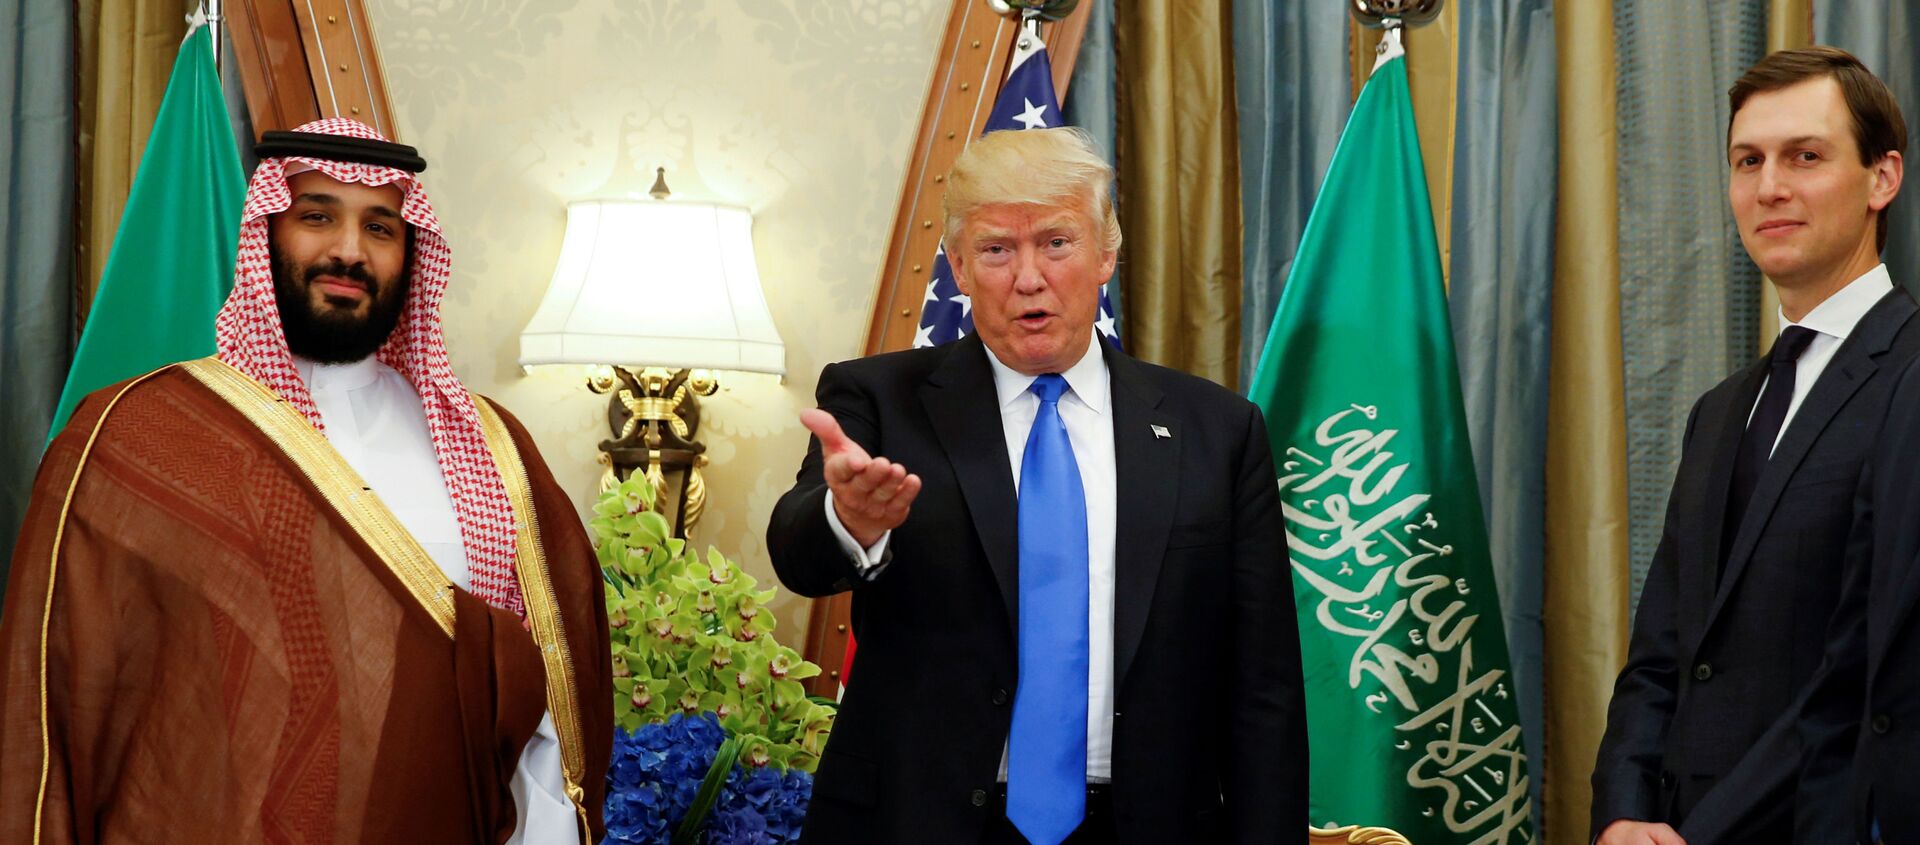 صورة أرشيفية تعبيرية  - الرئيس الأمريكي دونالد ترامب يلتقي مع الأمير محمد بن سلمان في الرياض، السعودية 20 مايو 2017 - سبوتنيك عربي, 1920, 10.12.2020